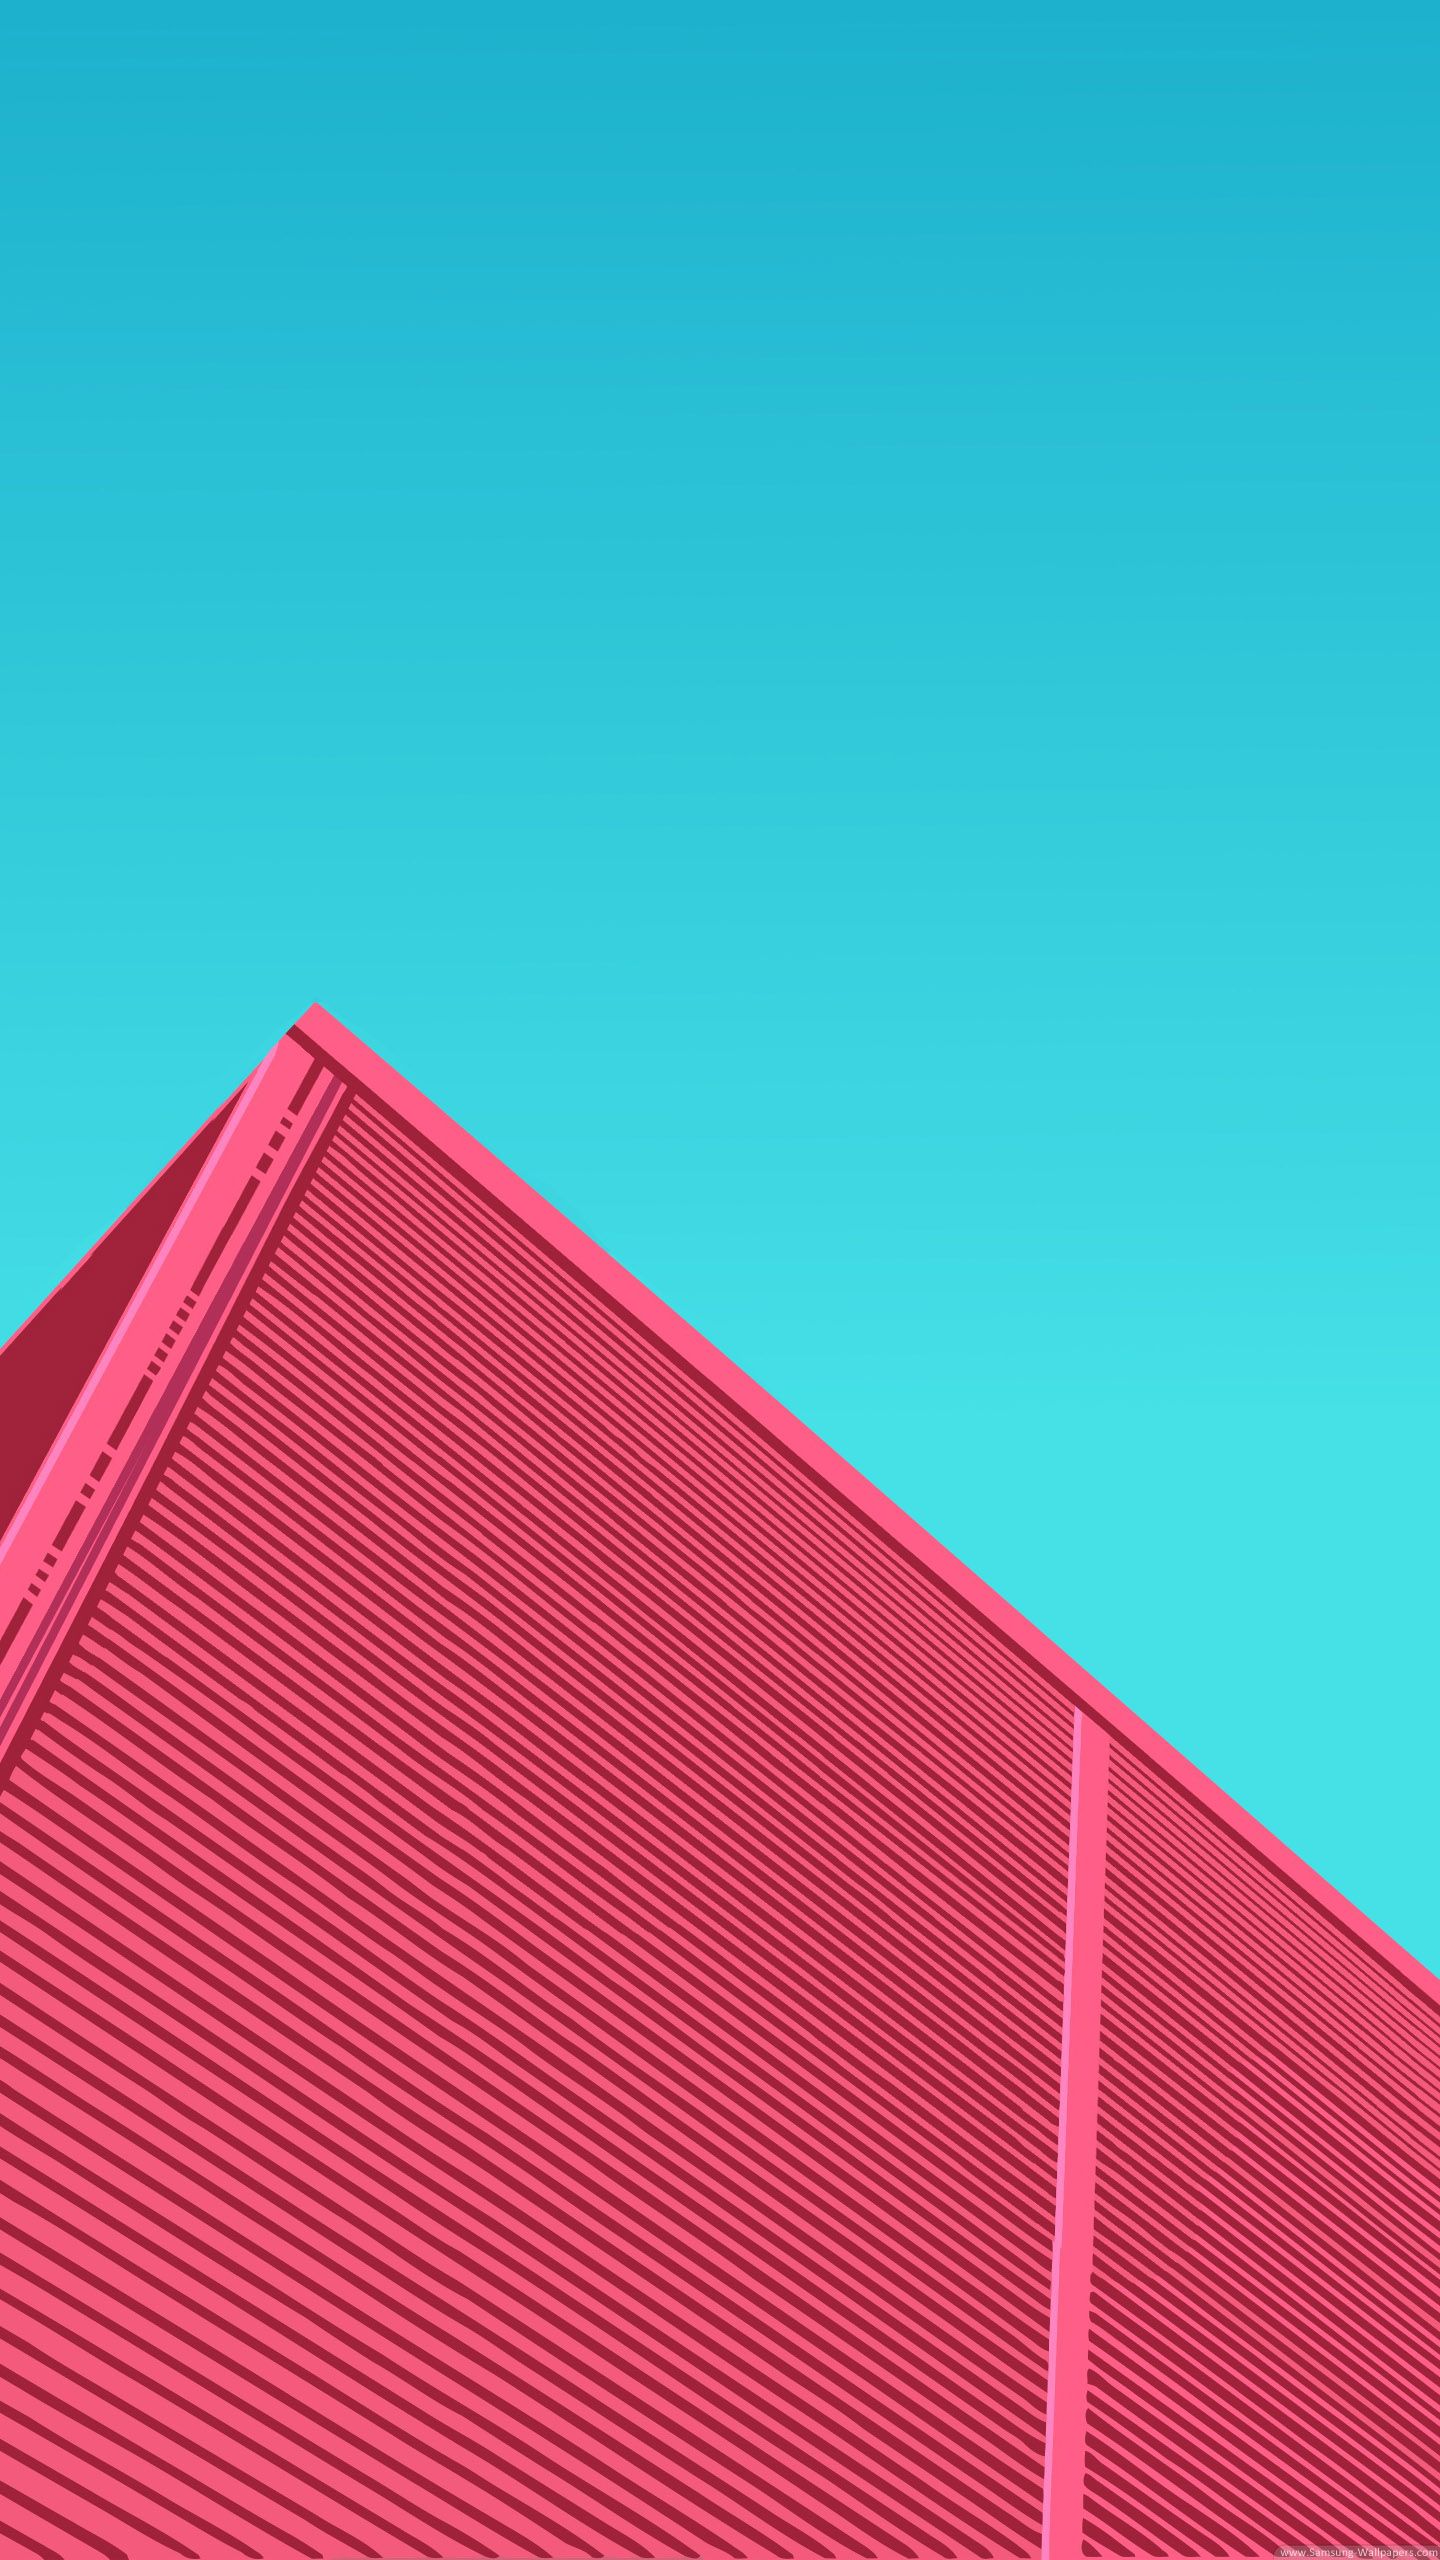 sfondo di lg g4,rosso,rosa,blu,turchese,tetto